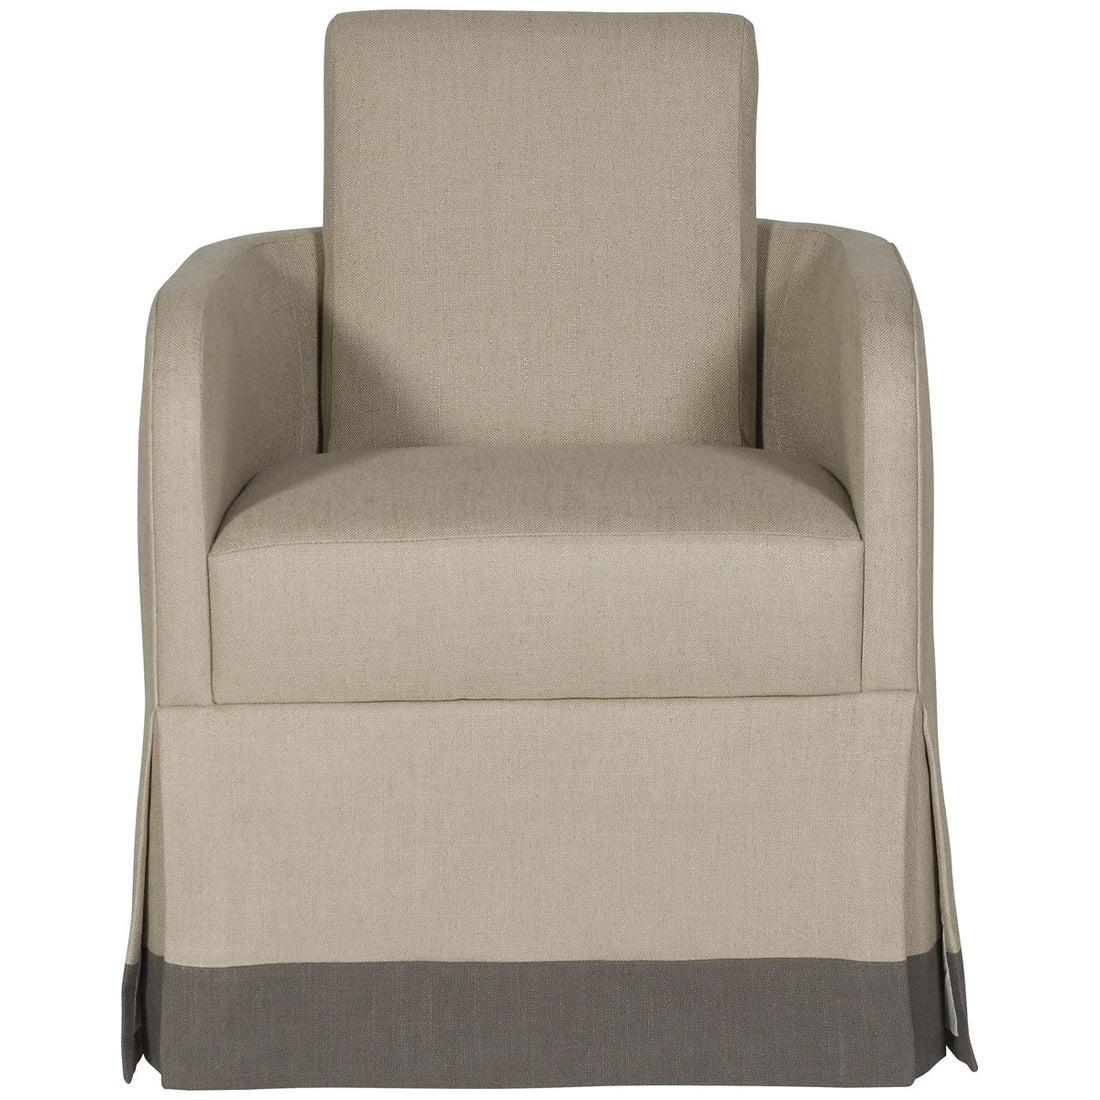 Vanguard Furniture Laura Arm Chair